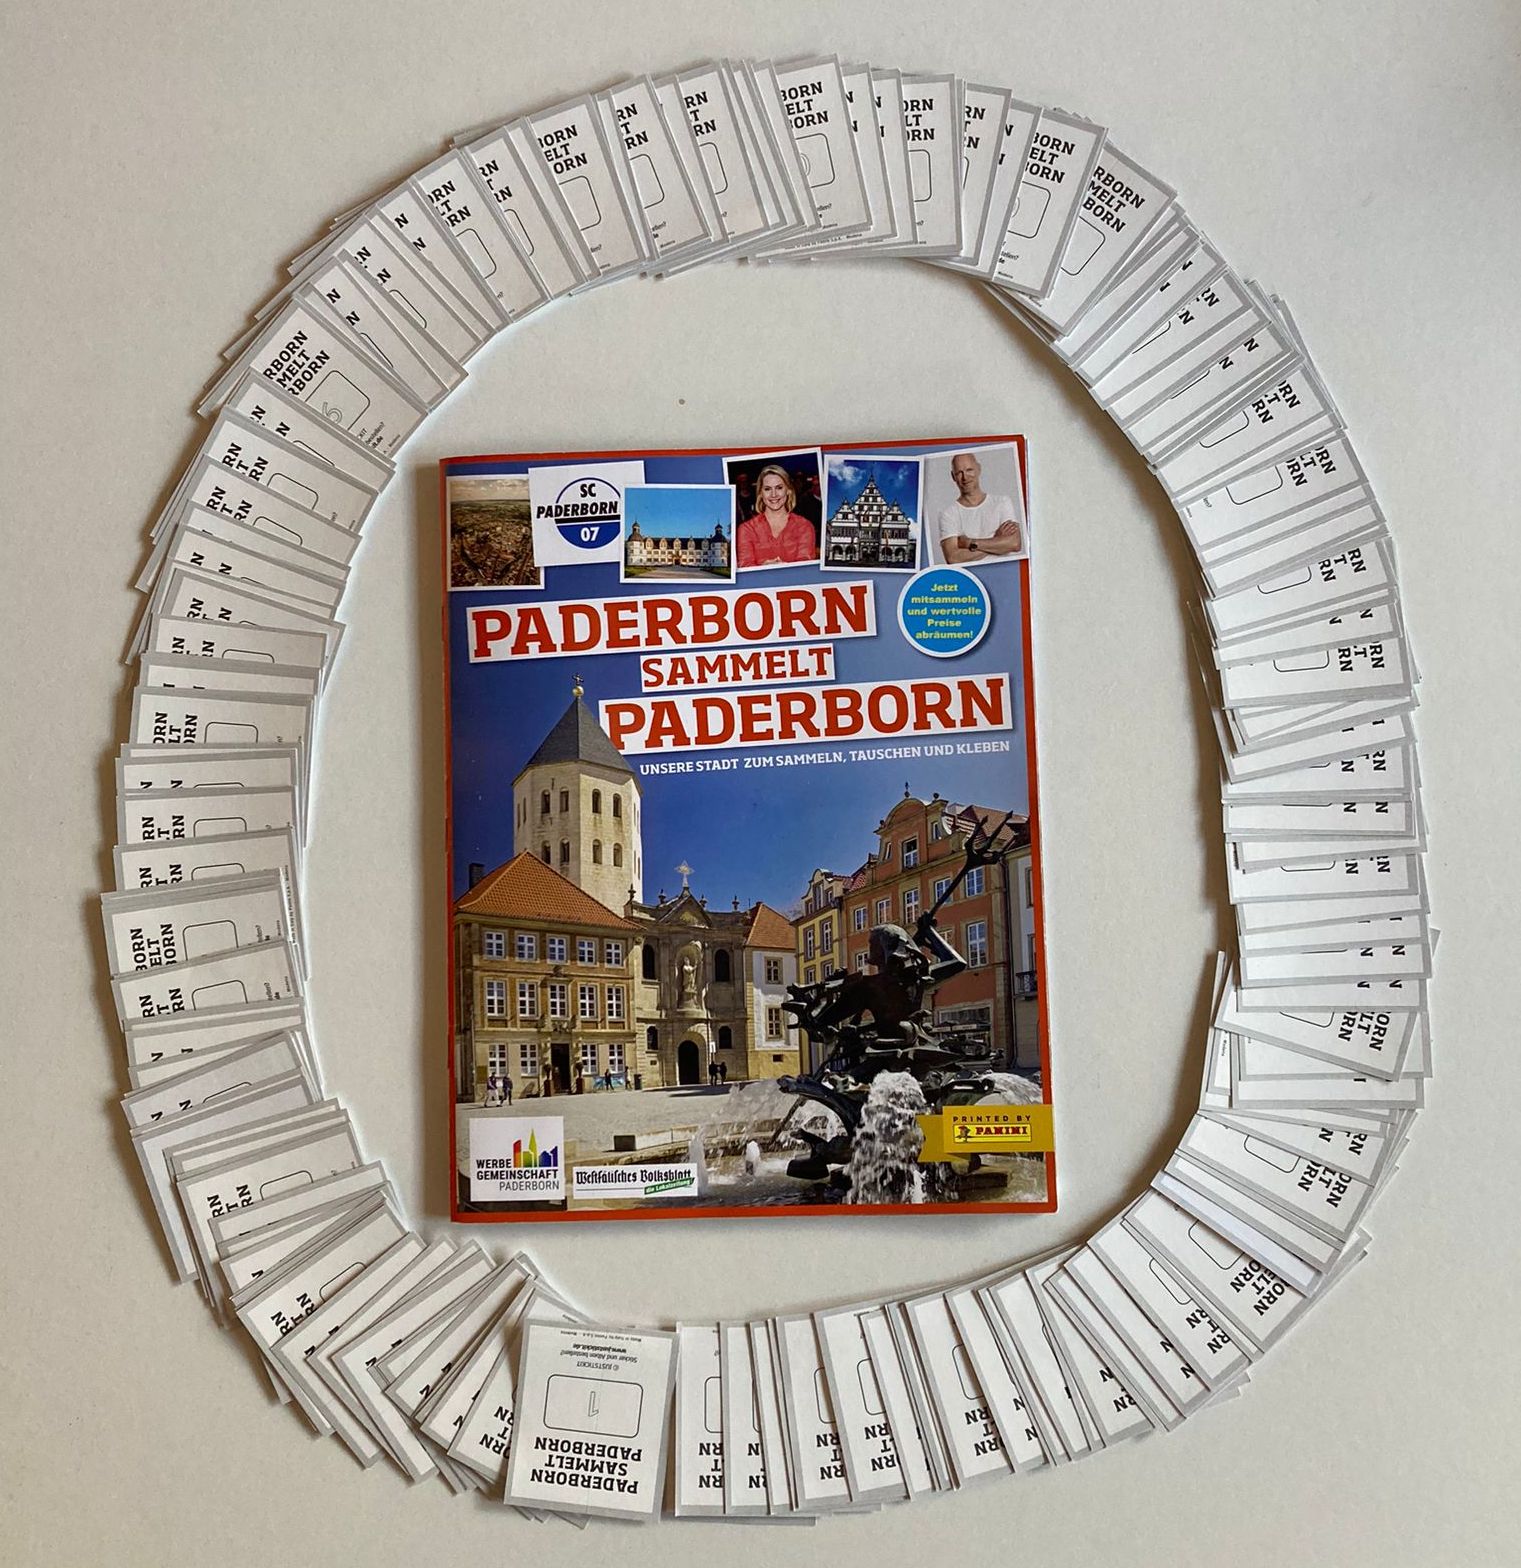 Paderborn sammelt Paderborn - Sticker für den guten Zweck